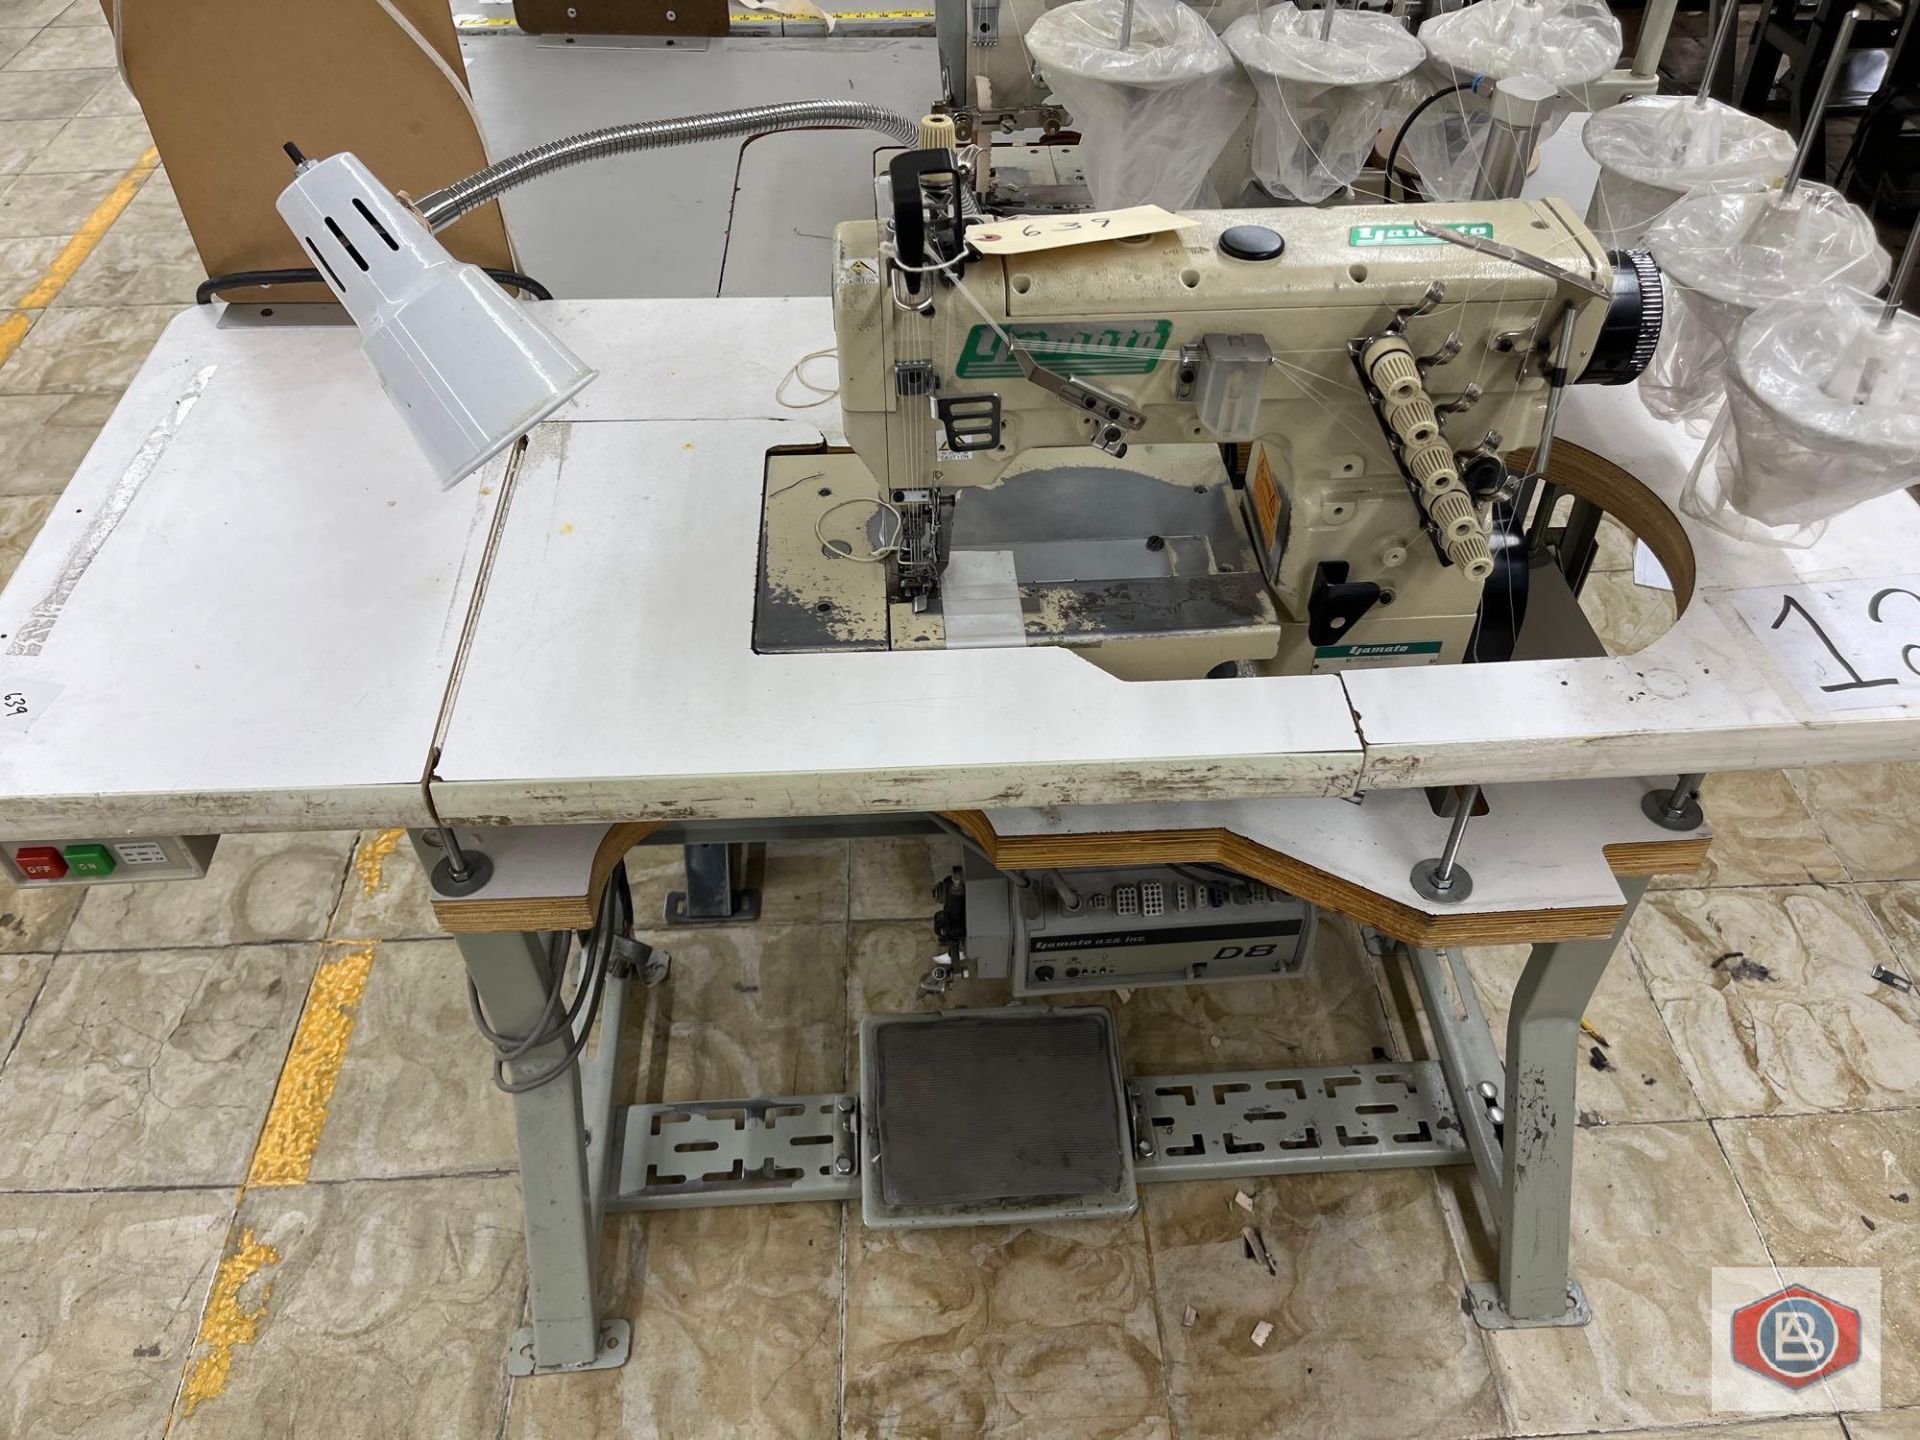 Yamato Sewing Machine - Image 2 of 3